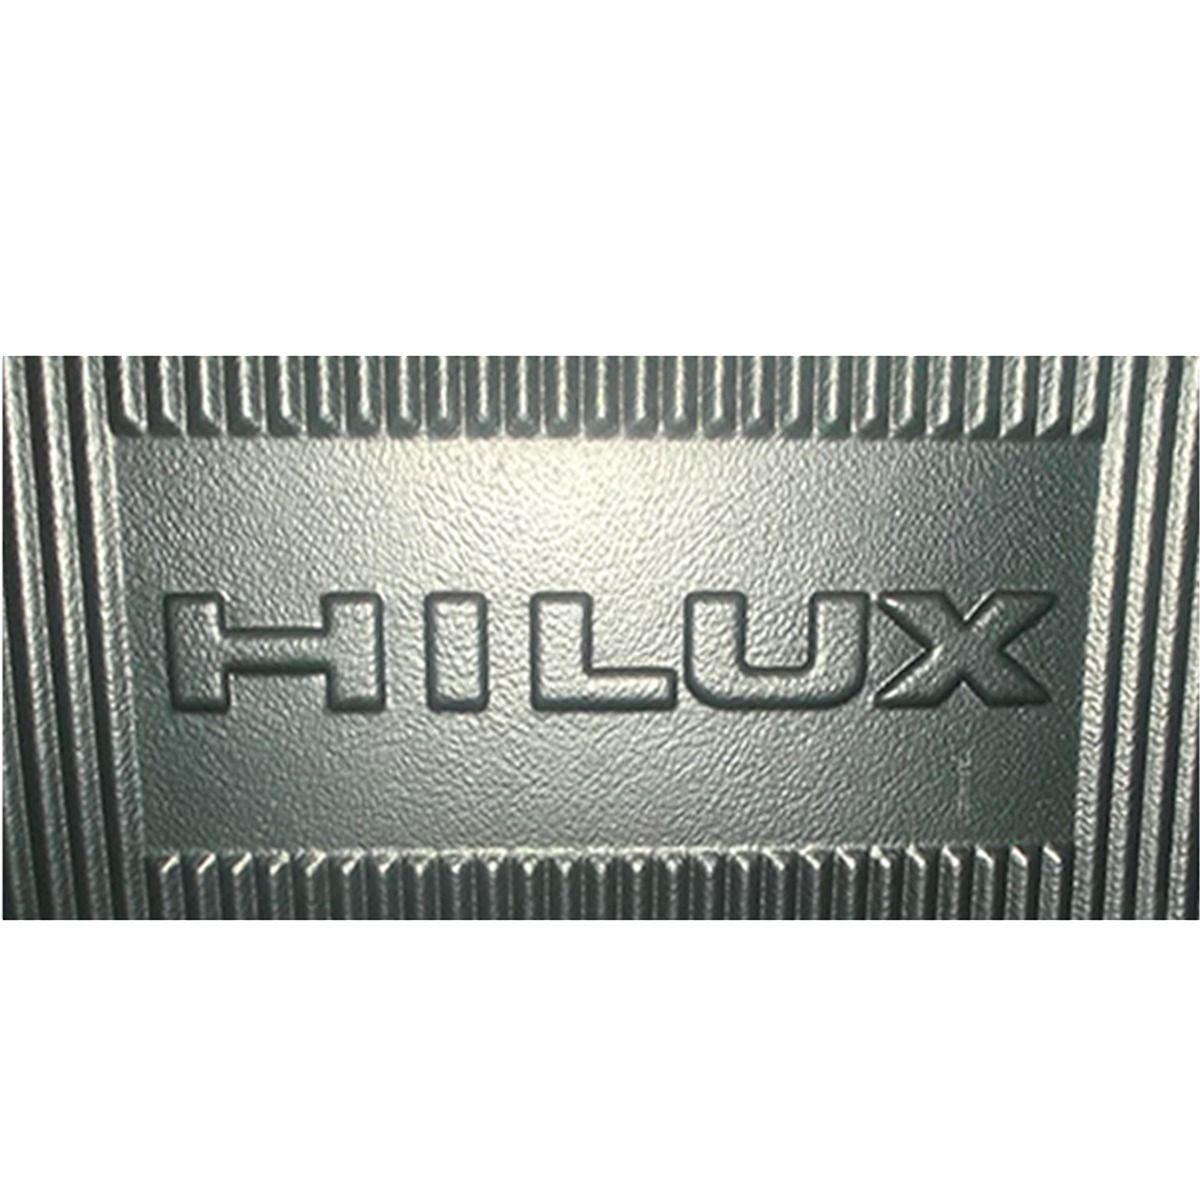 Pendaliner Logo - Bedliner Pendaliner Hilux Doble Cabina 16 19 Con Logo Hilux